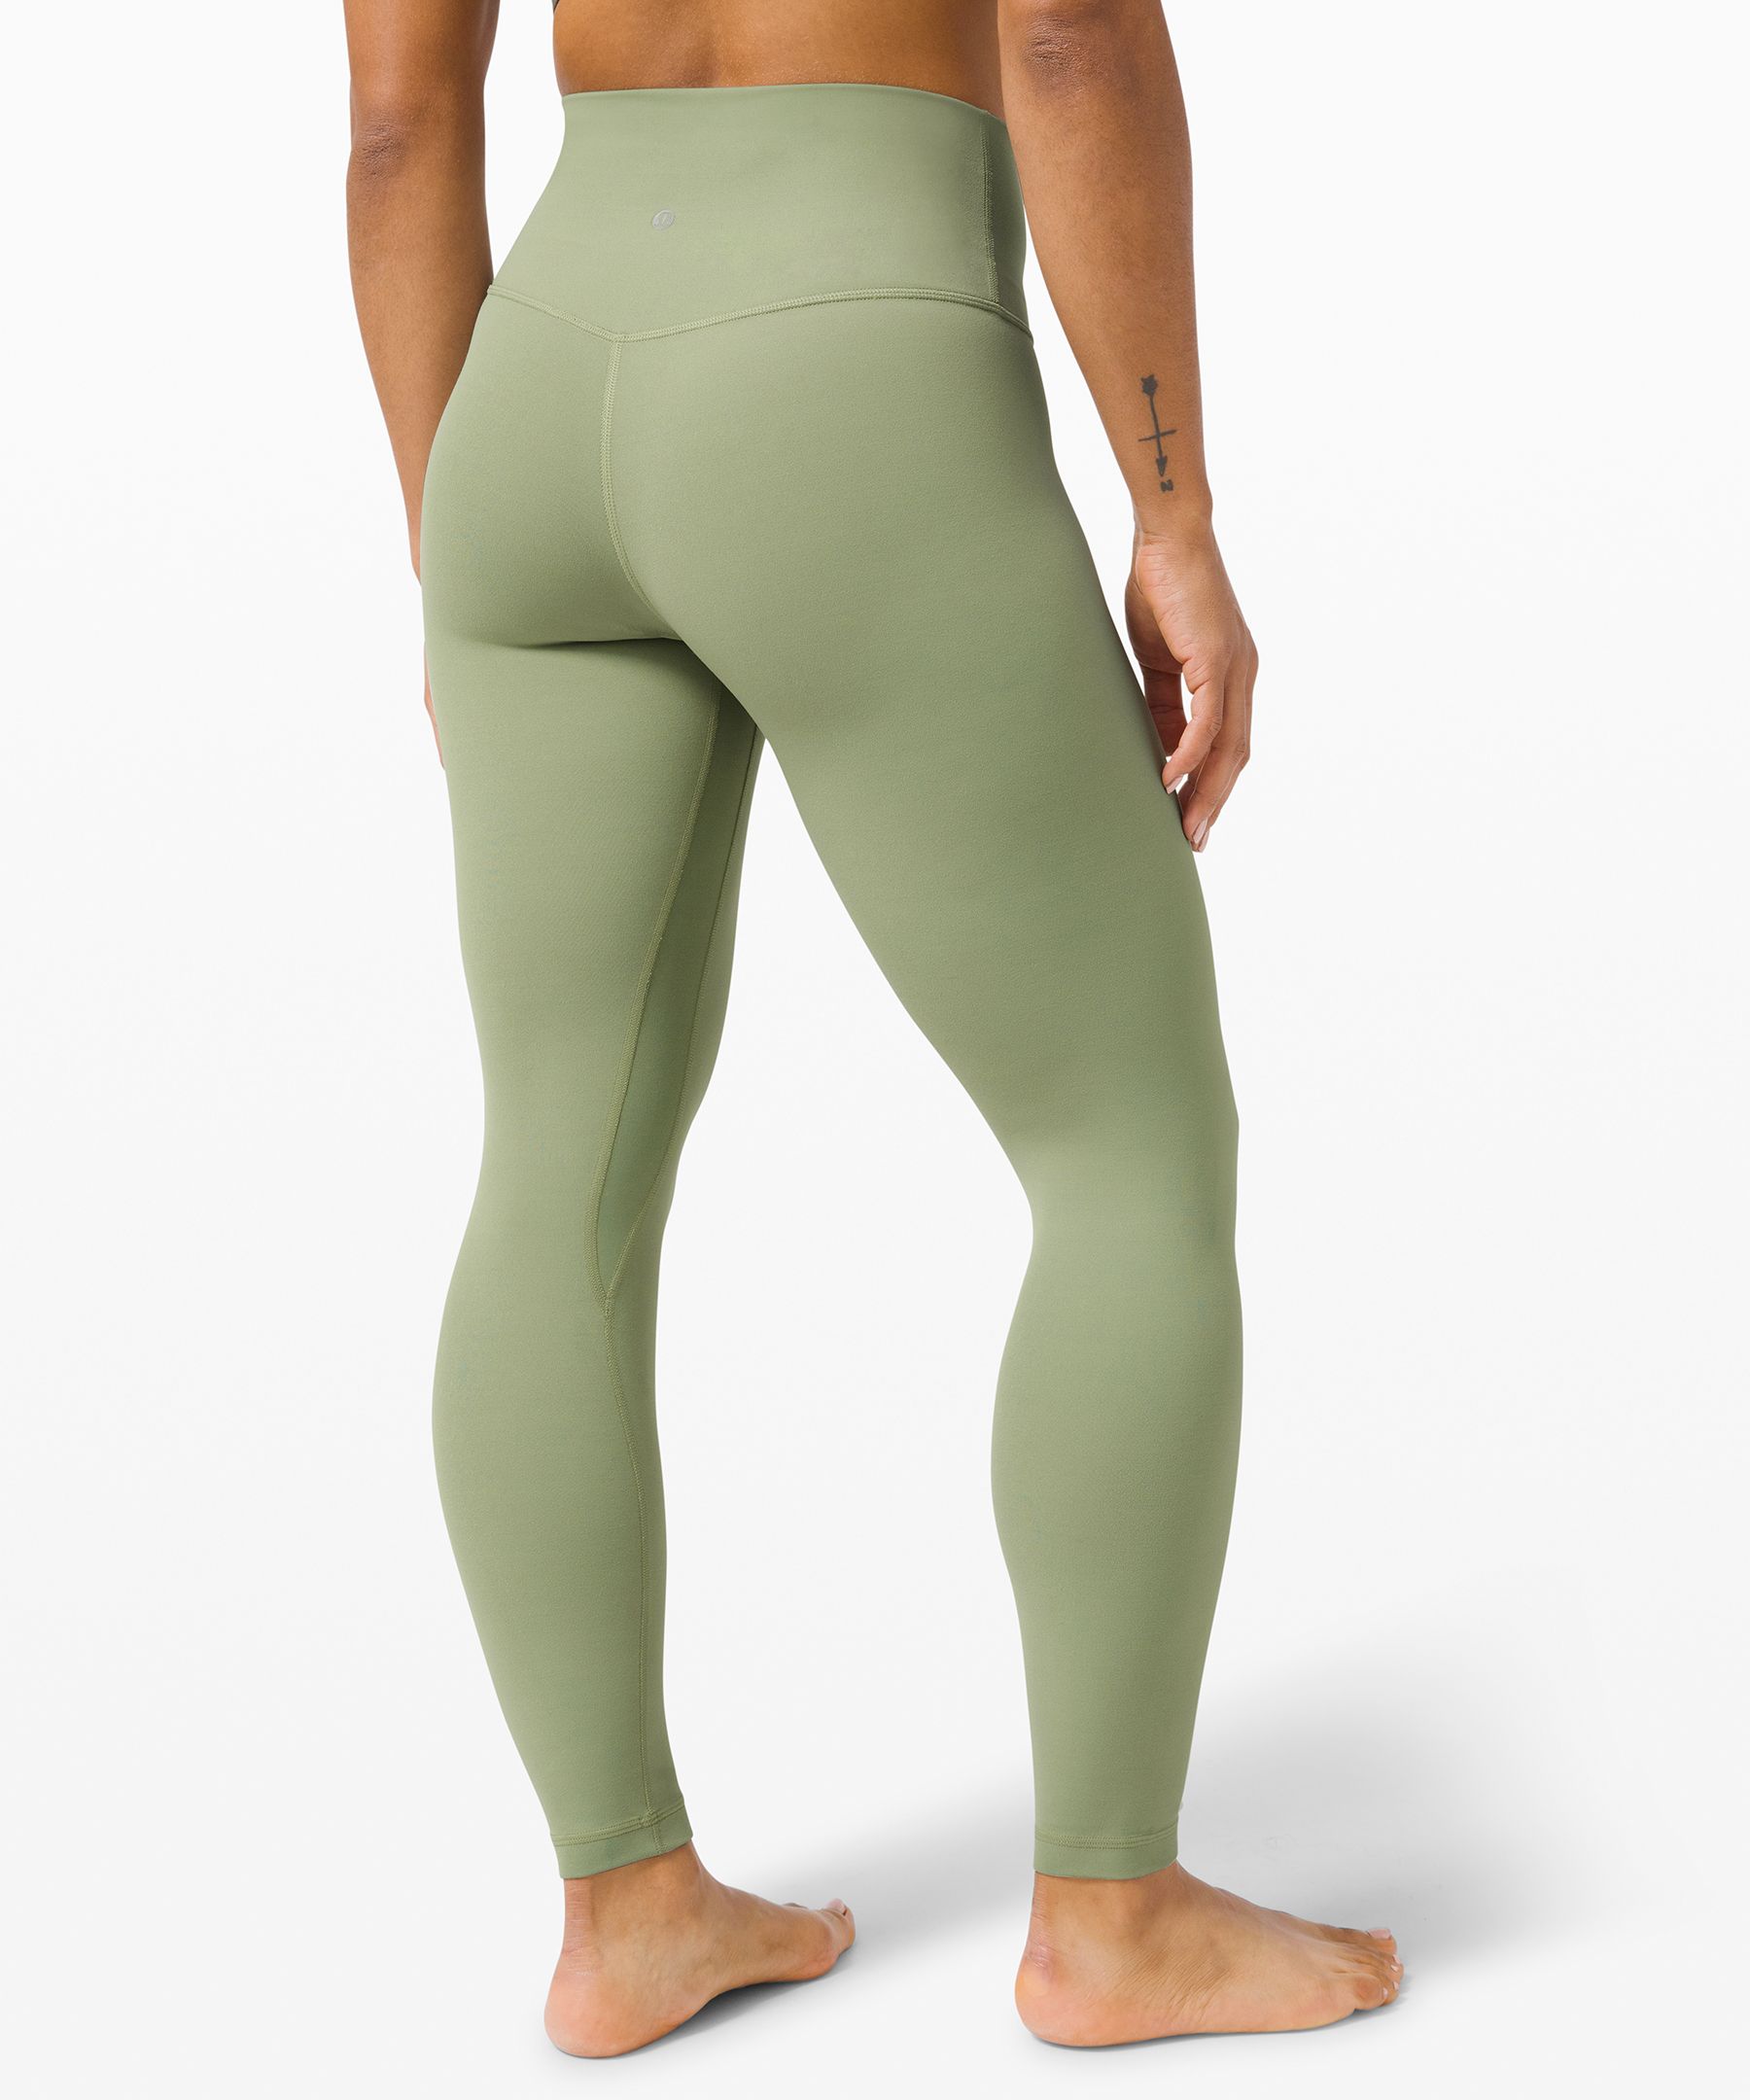 lululemon athletica, Pants & Jumpsuits, Lululemon Olive Green Leggings